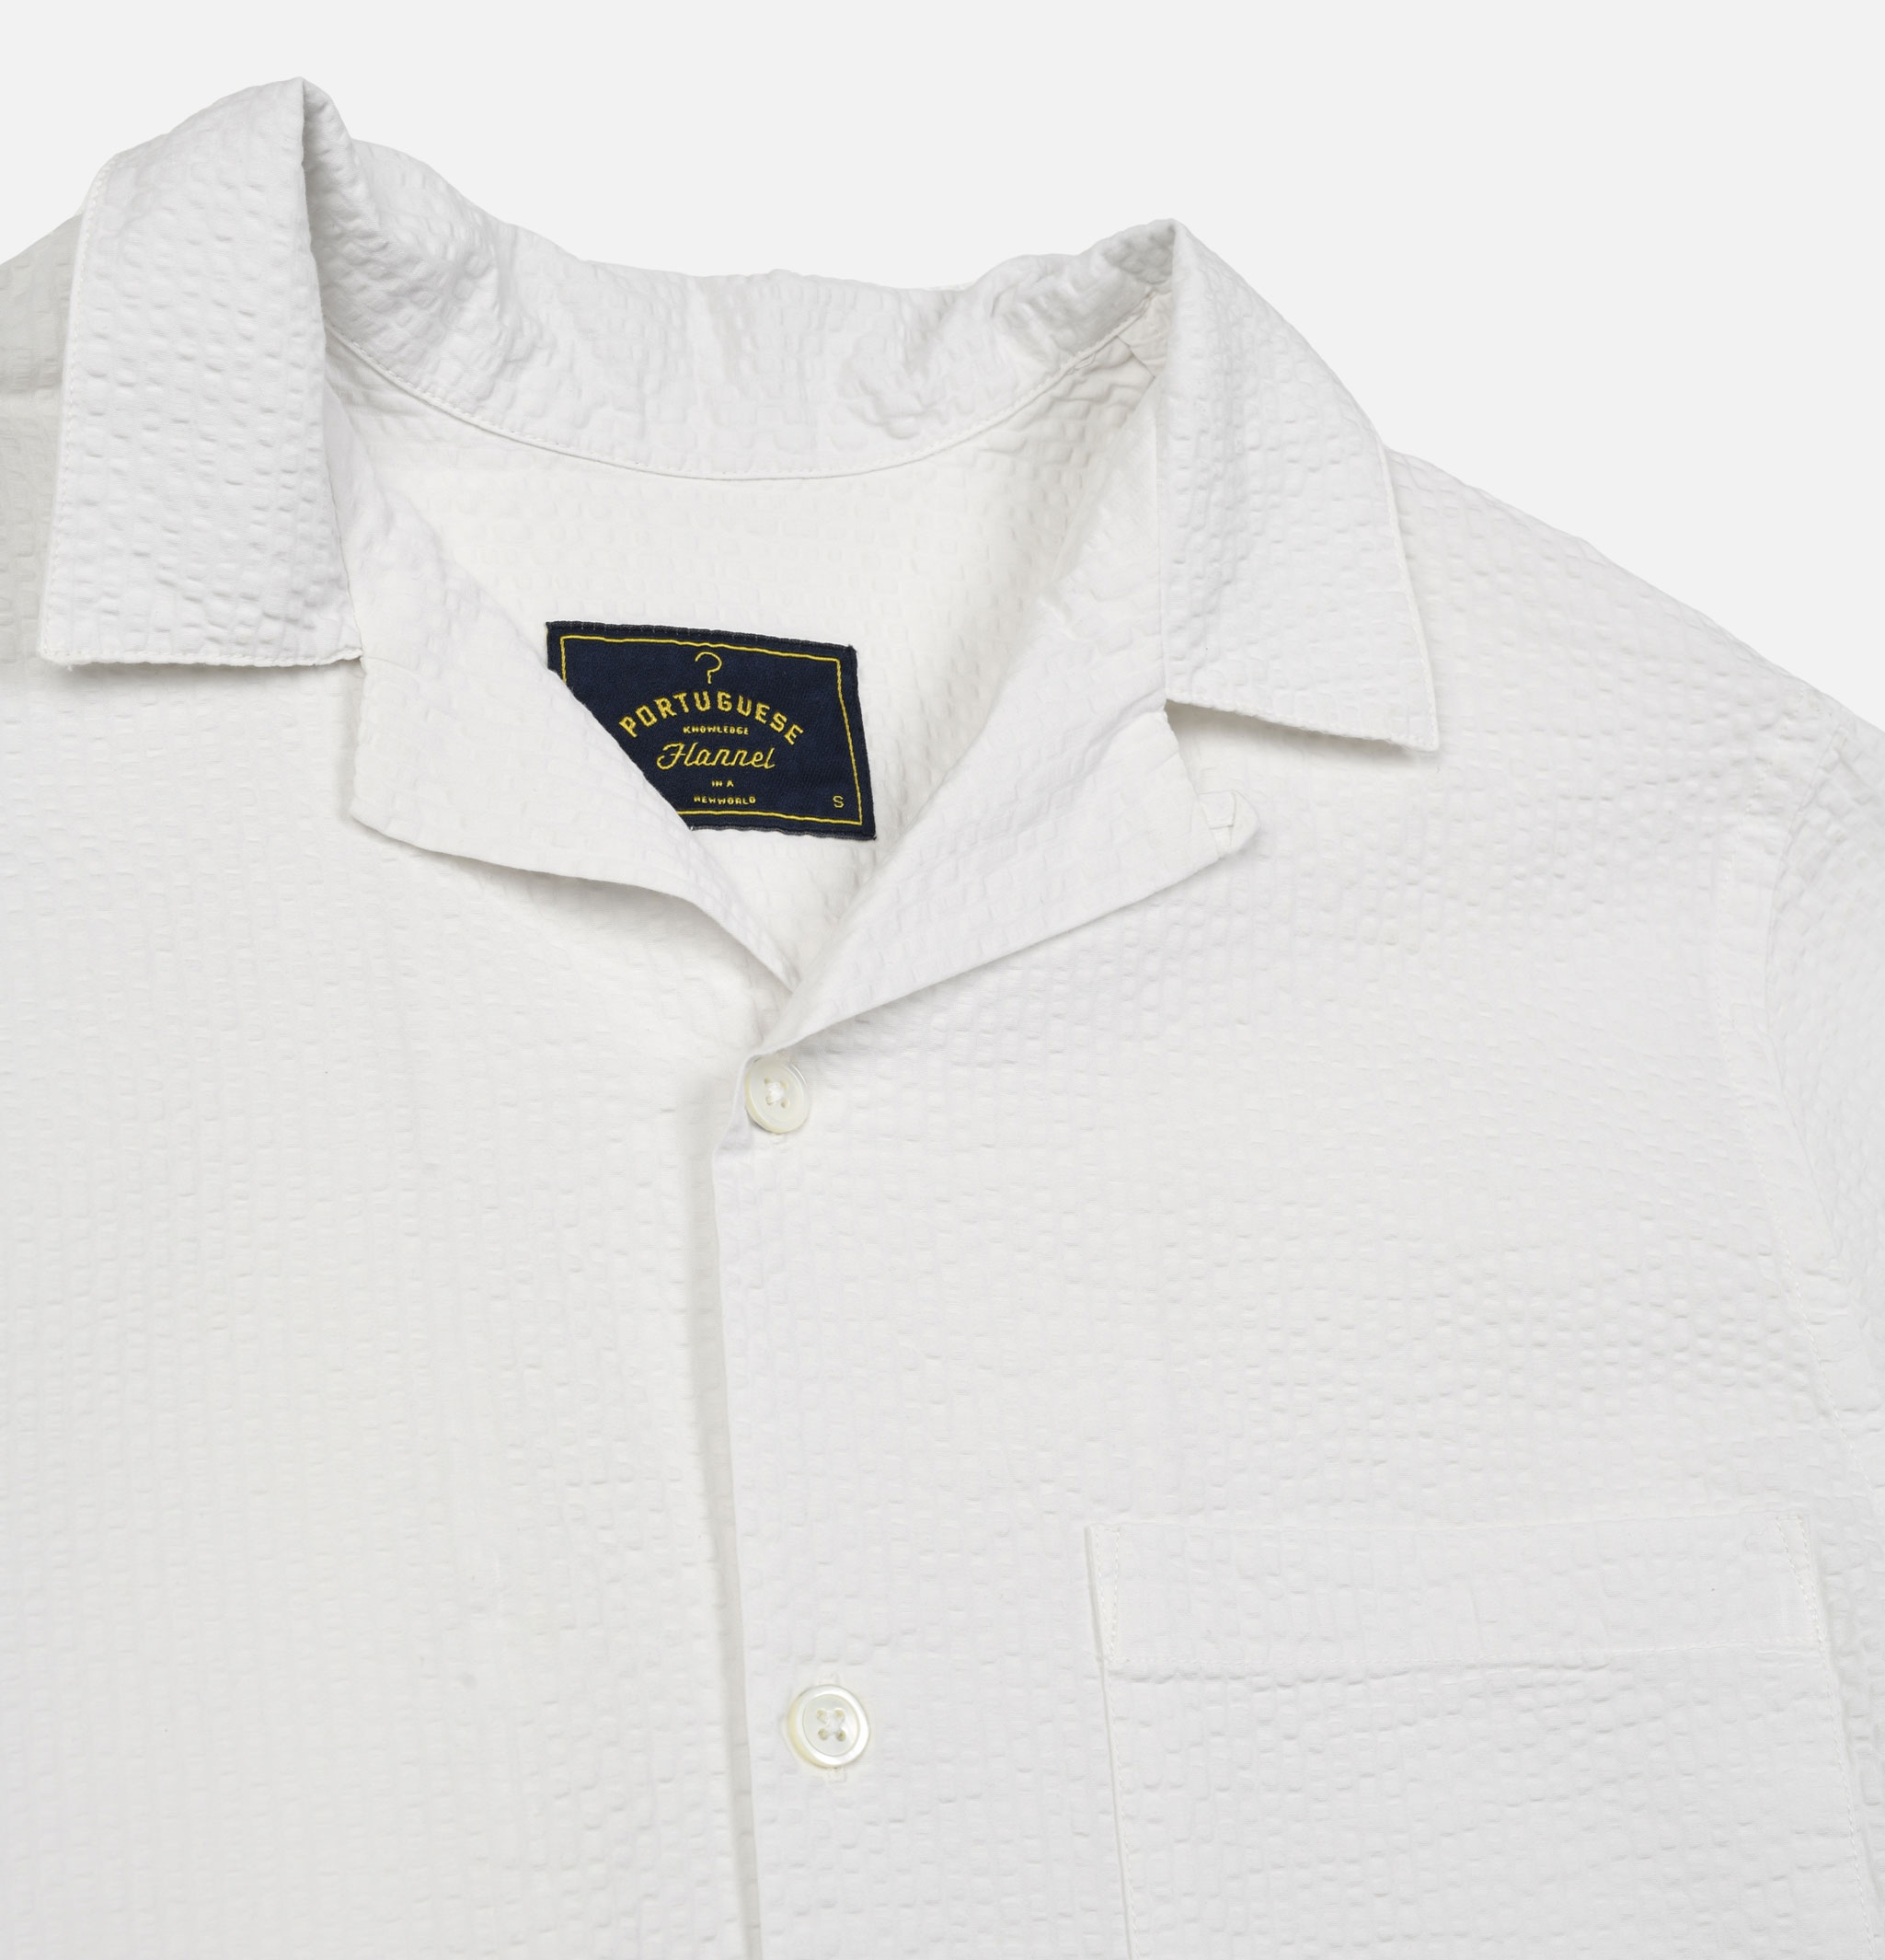 Portuguese Flannel Atlantico Camp White shirt